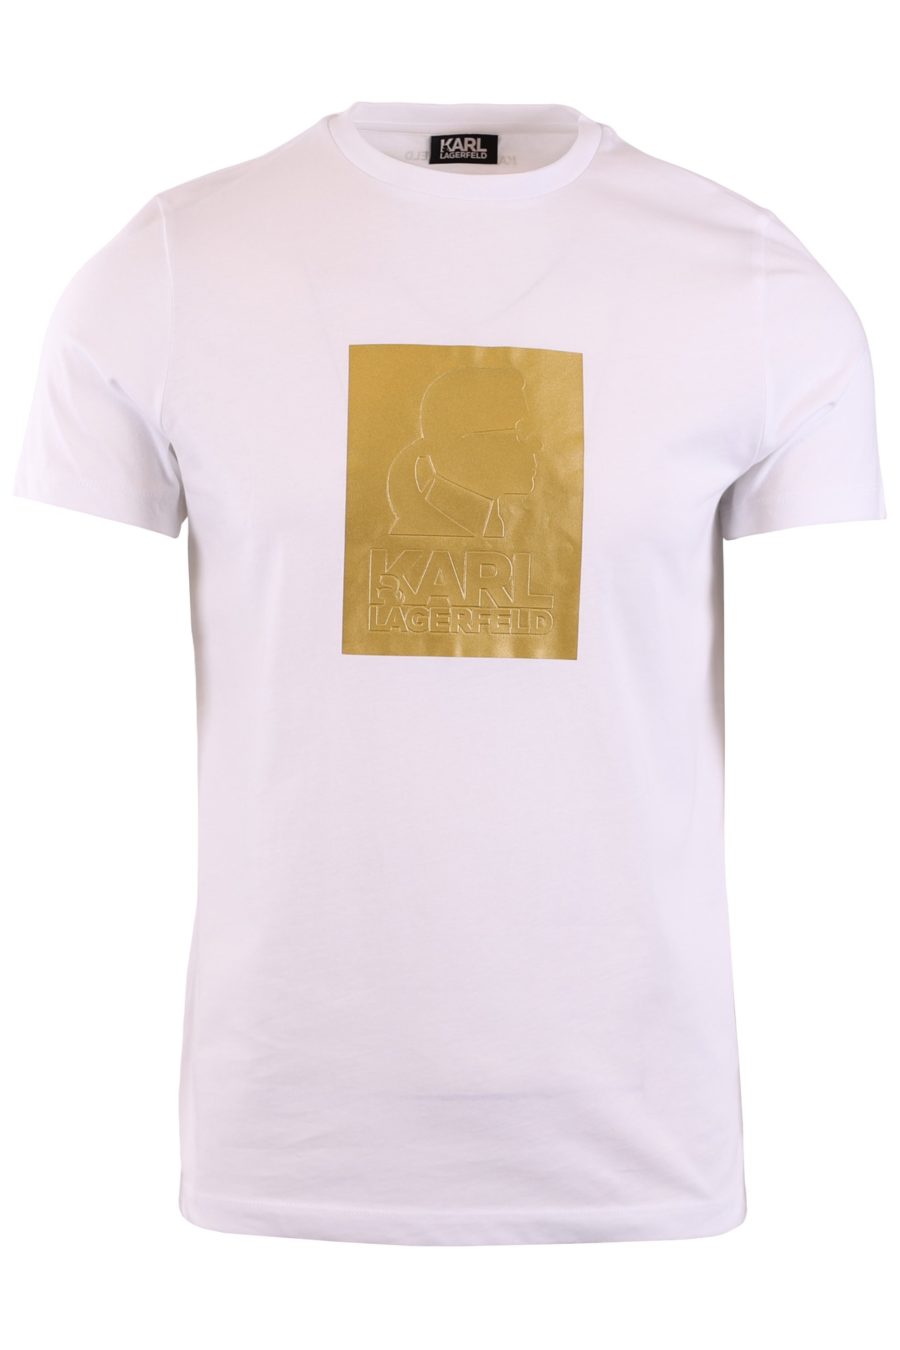 Camiseta blanca estampado dorado "Karl" - b4c0b4e78ead2e519532907d000289816327dc34